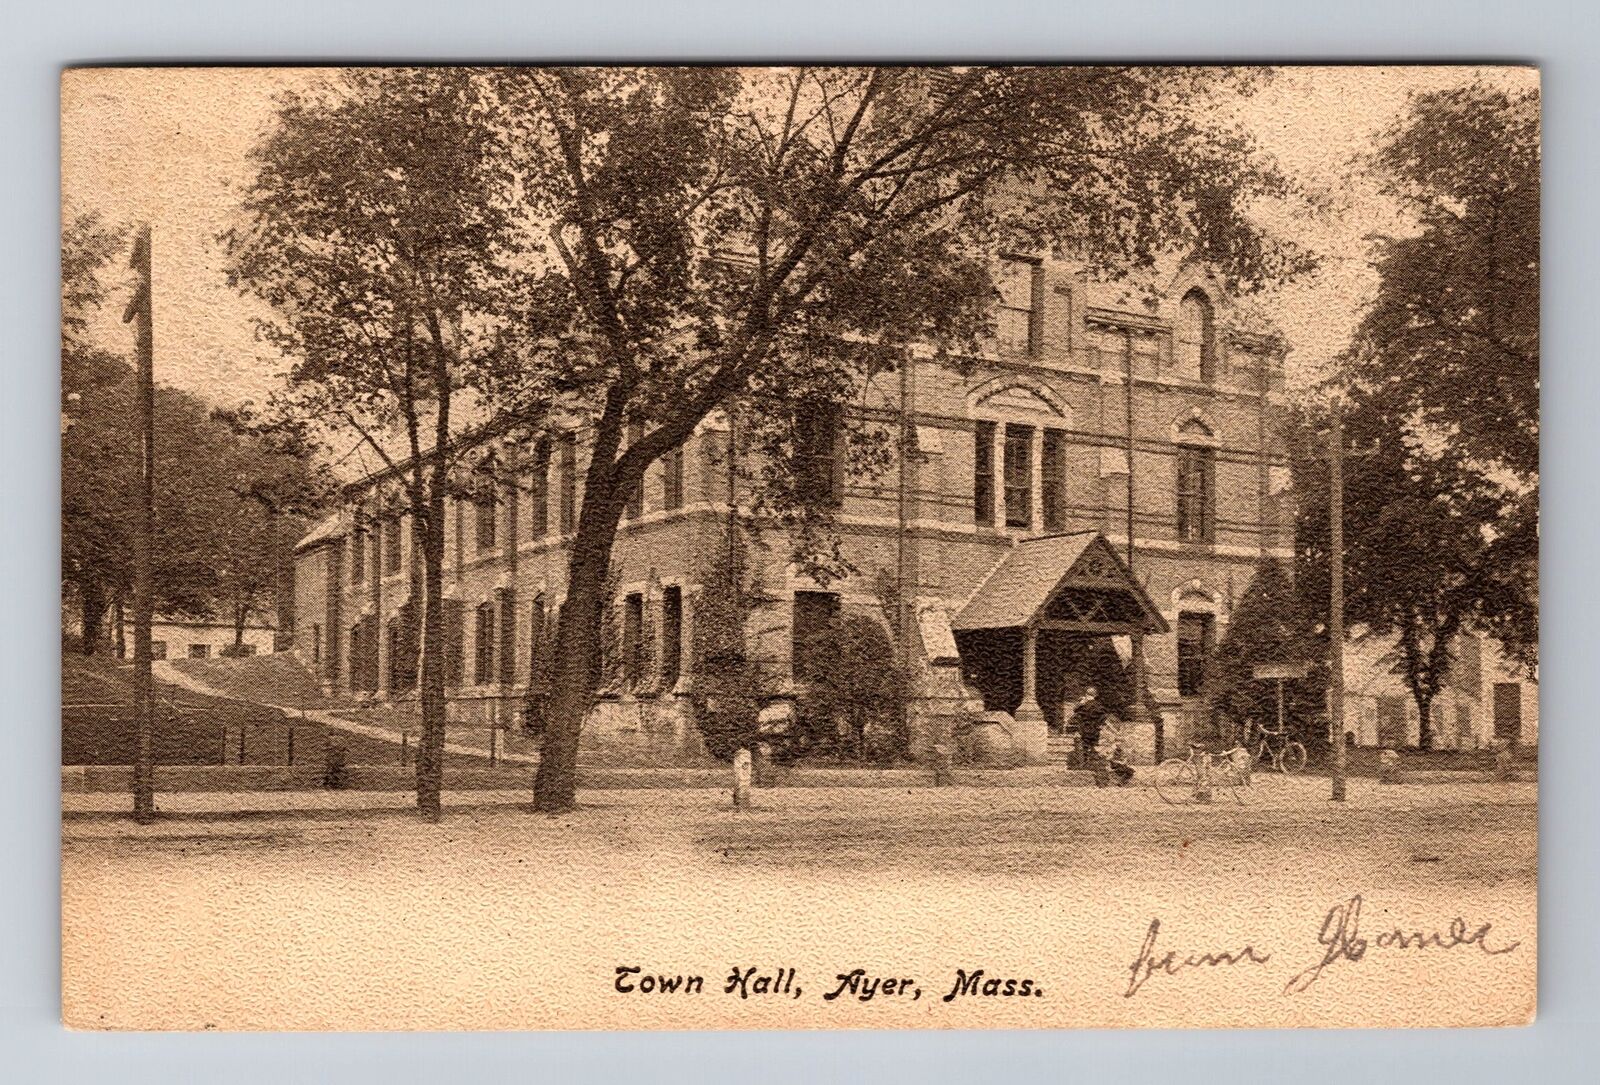 Ayer MA-Massachusetts, Town Hall, Antique, Vintage c1907 Souvenir Postcard